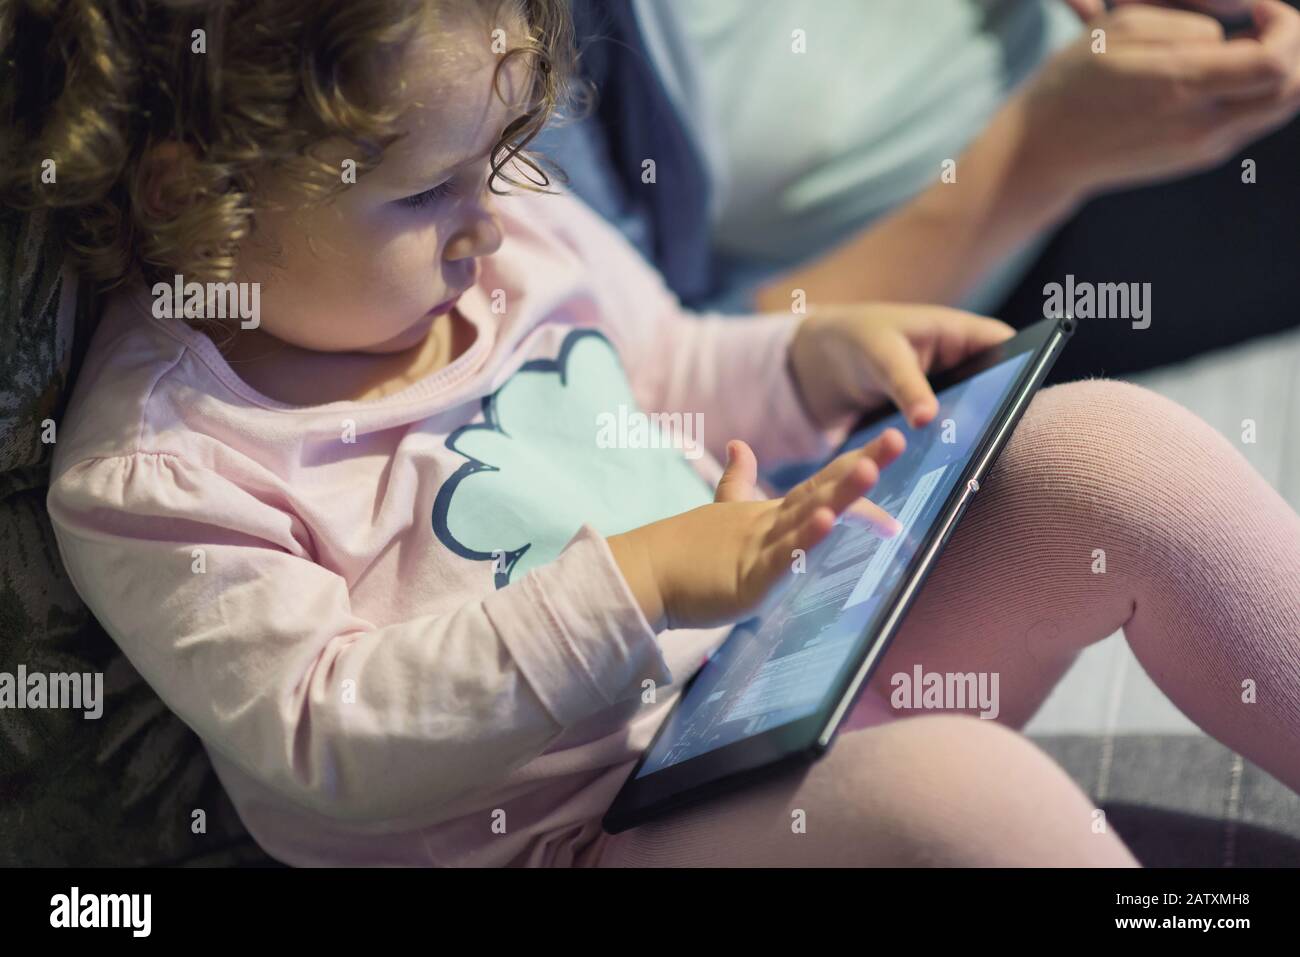 Petite fille se trouve près de sa mère et utilise une tablette numérique. Un enfant de deux ans regarde un appareil électronique à la maison. Banque D'Images